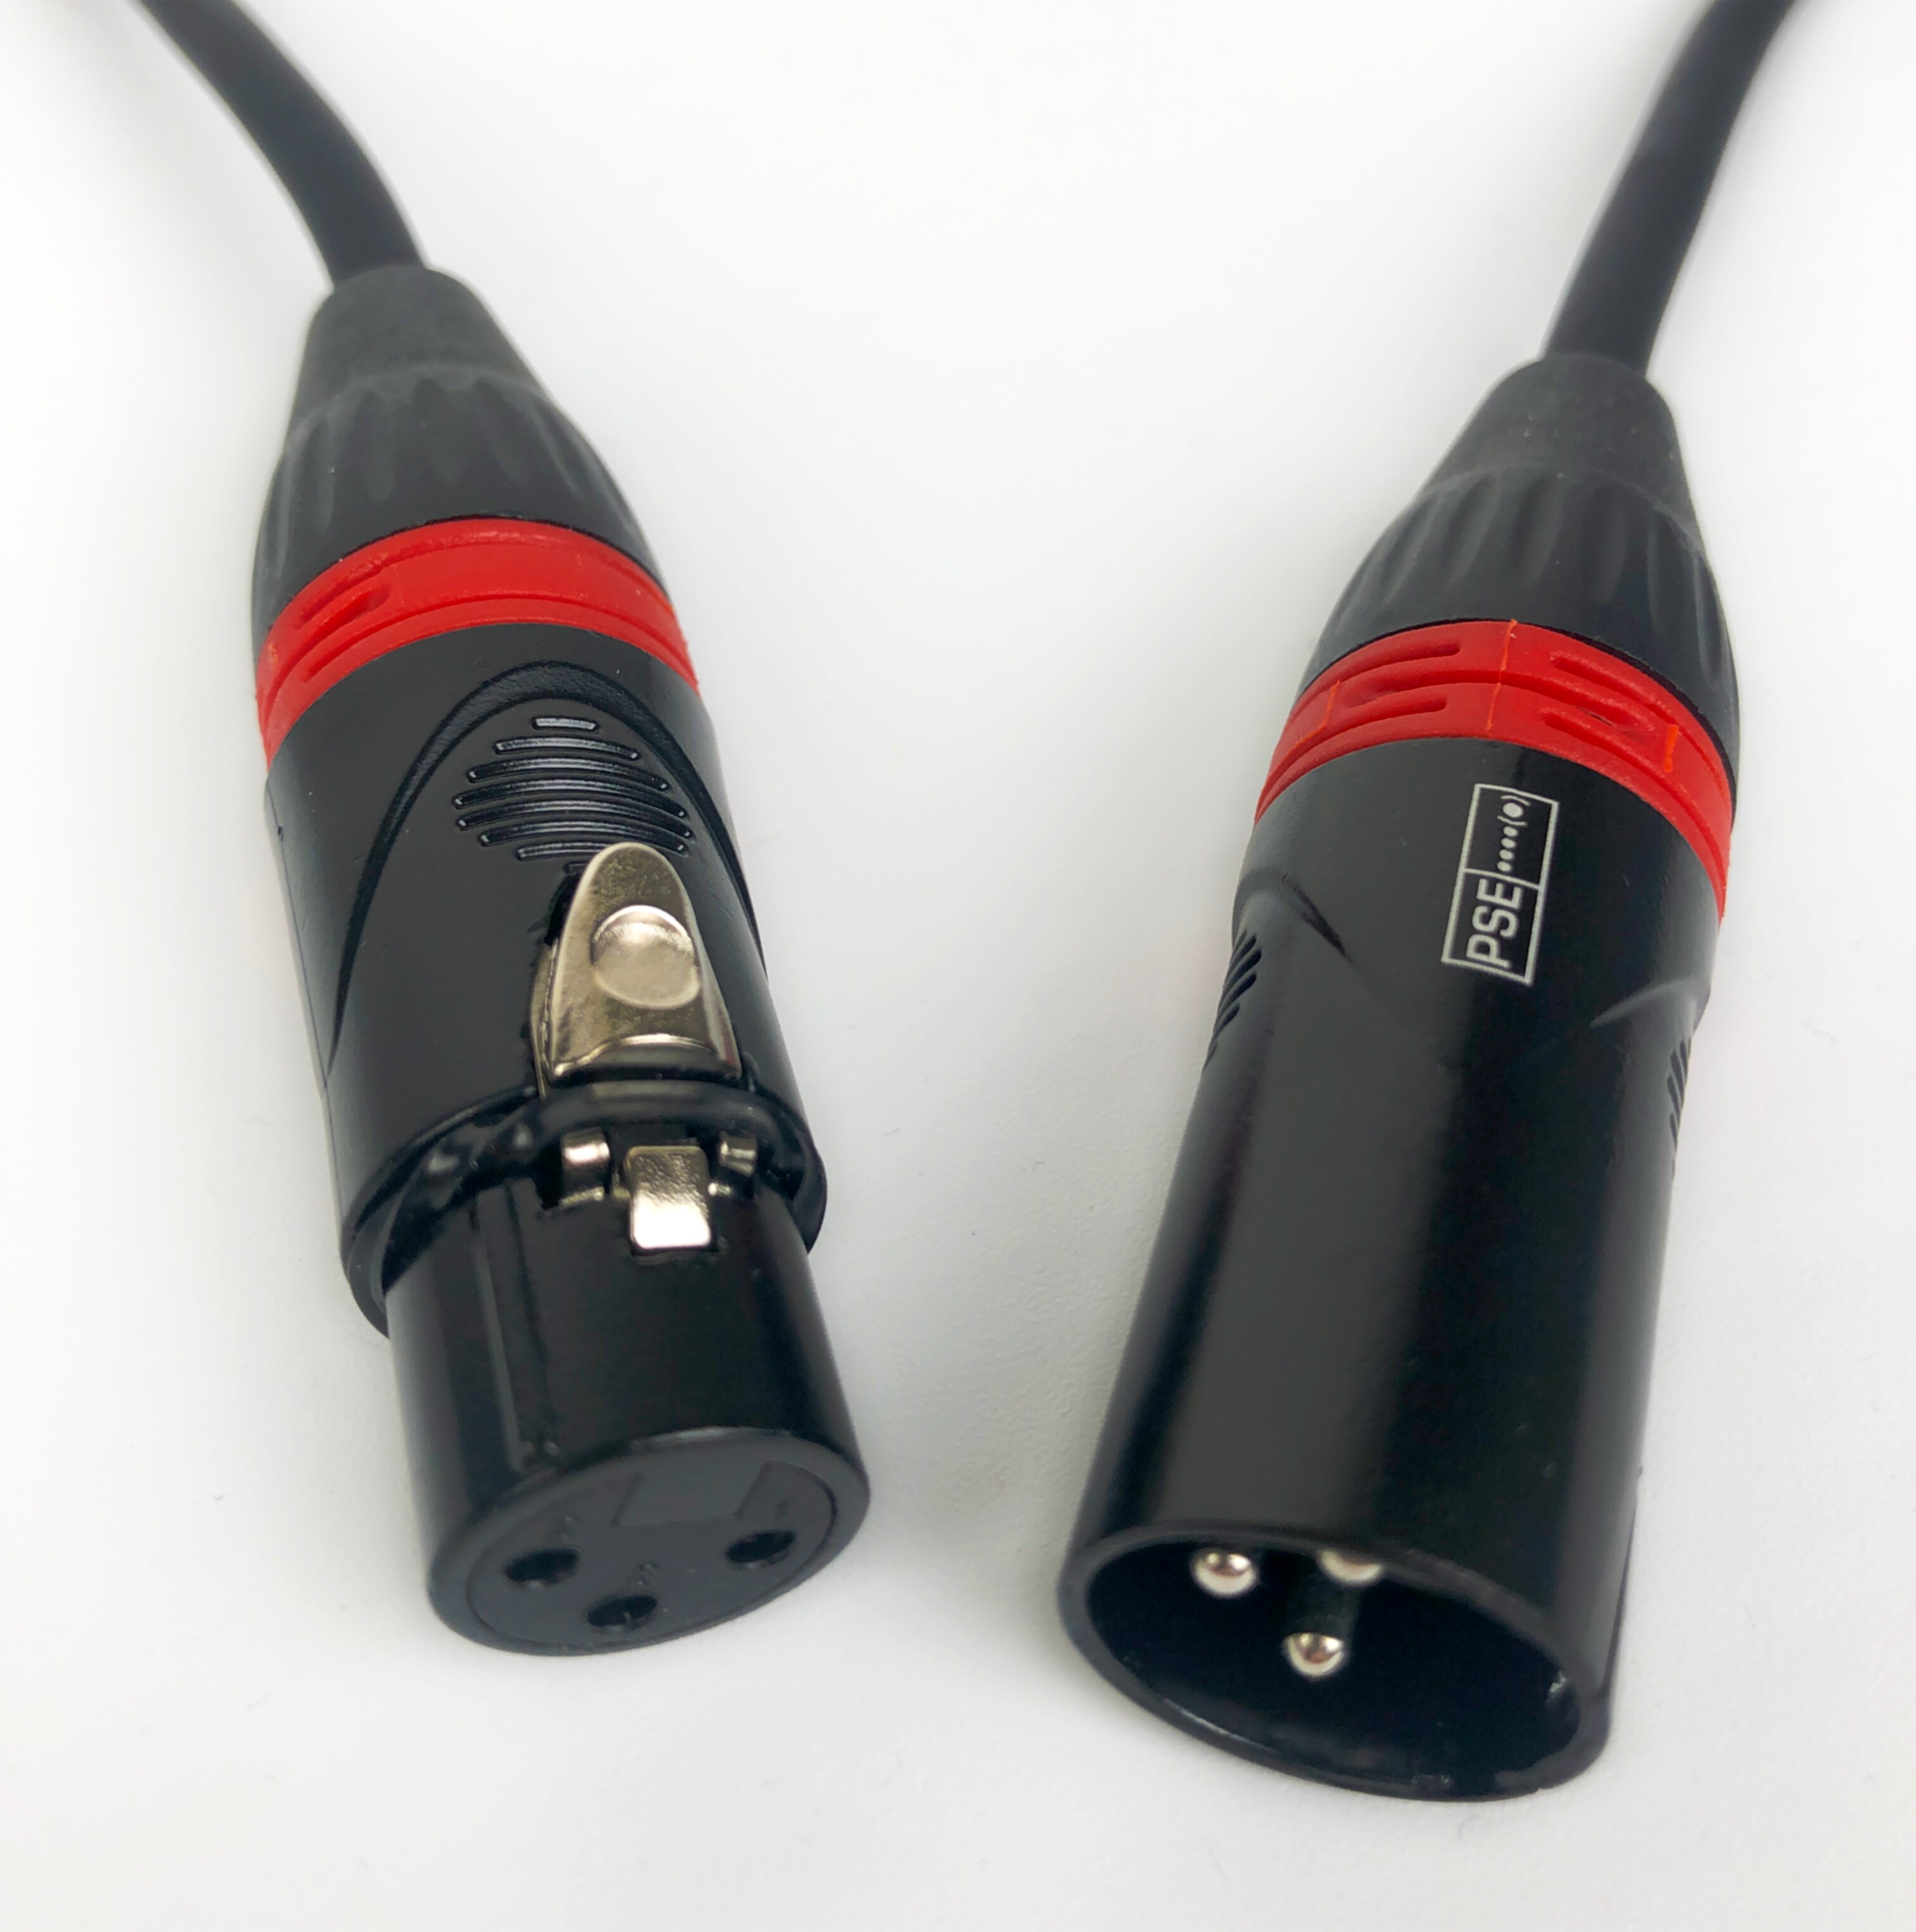 Röde Mikrofonkabel 20m XLR-XLR